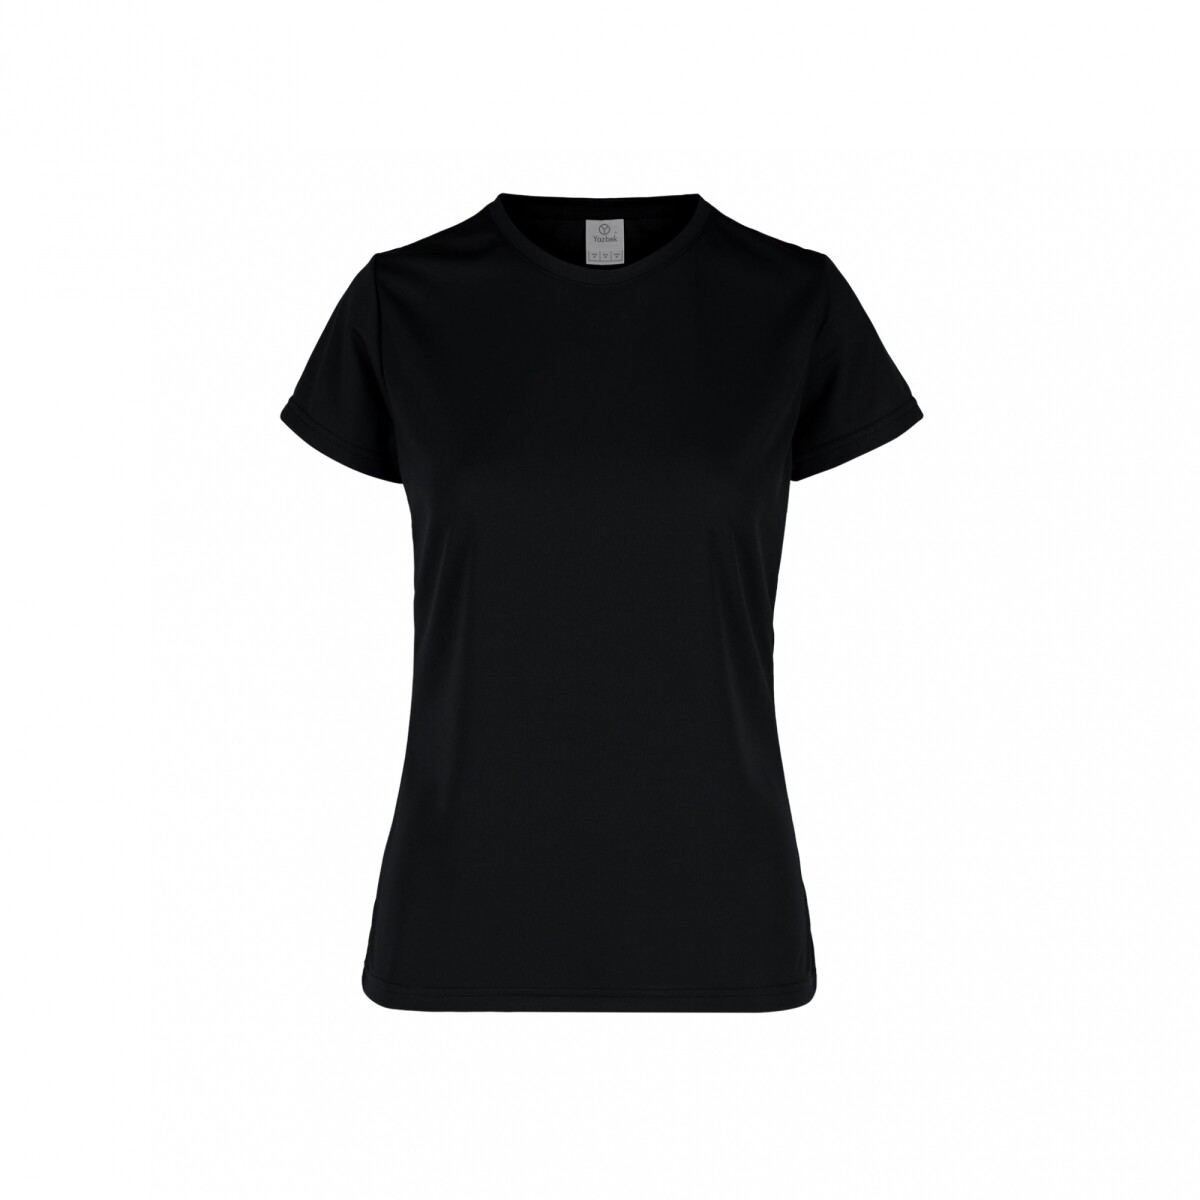 Camiseta a la base dry fit dama - Negro 